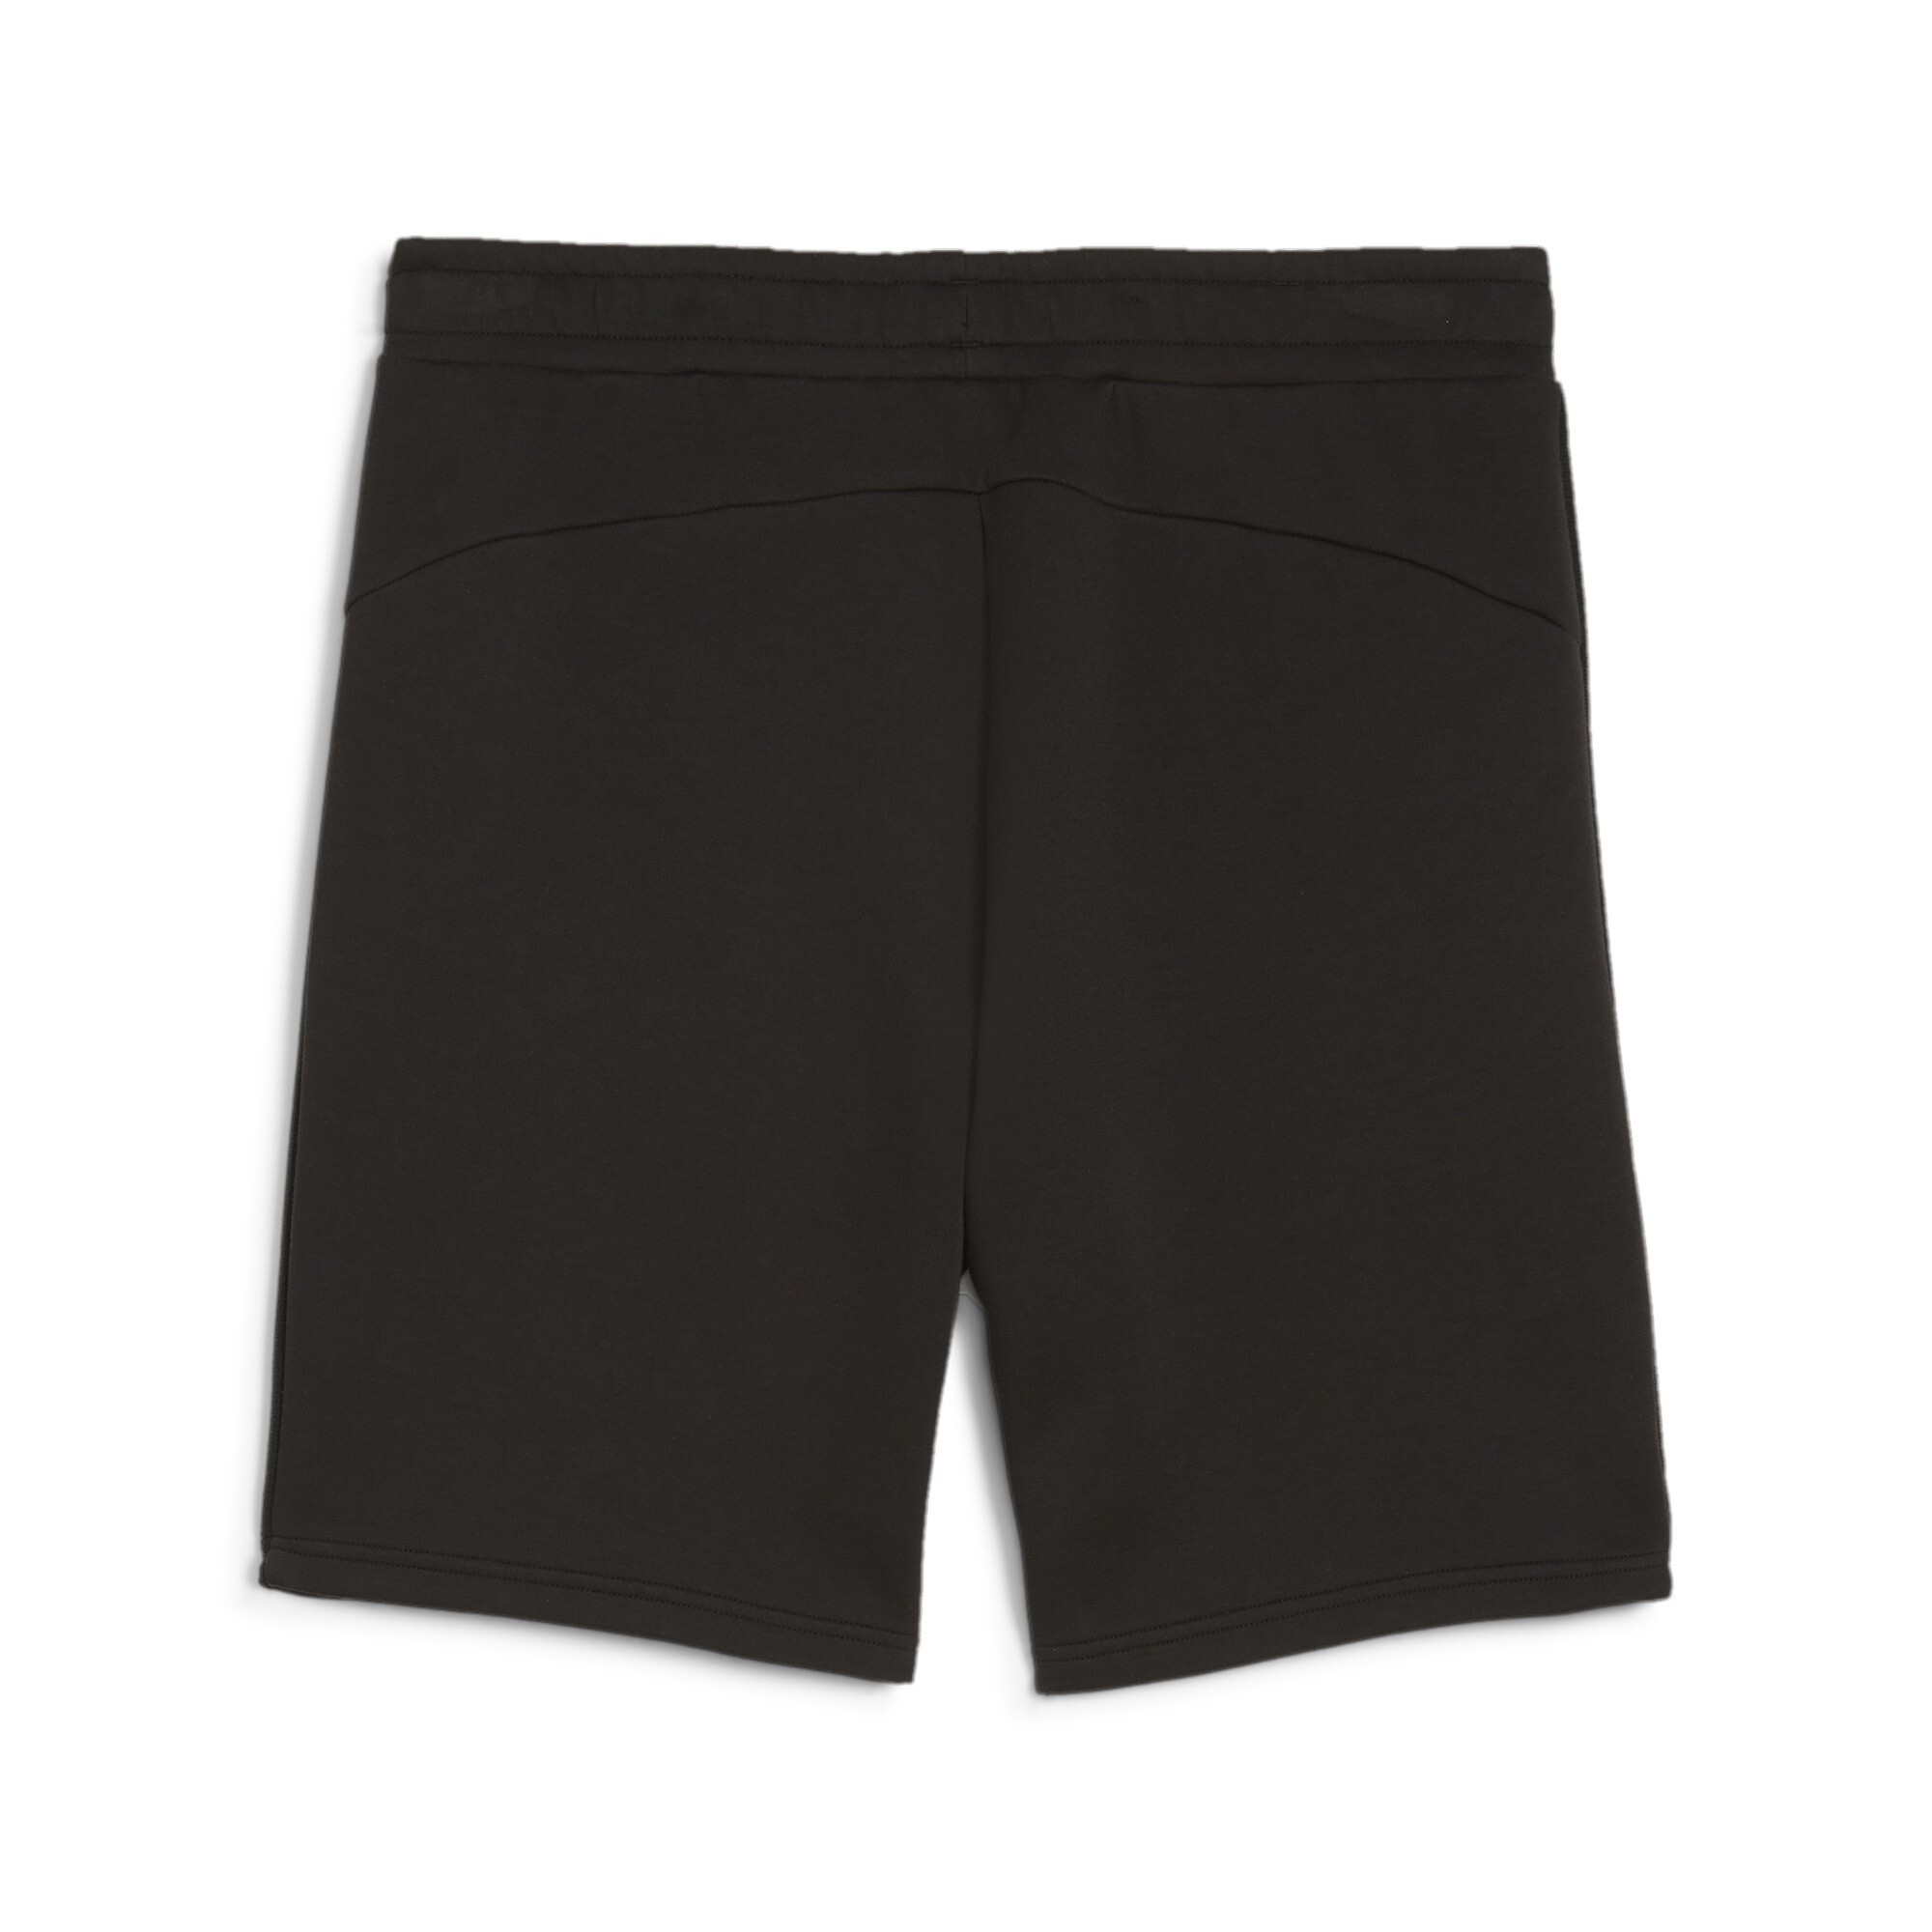 Men's PUMA EVOSTRIPE Shorts In Black, Size 2XL